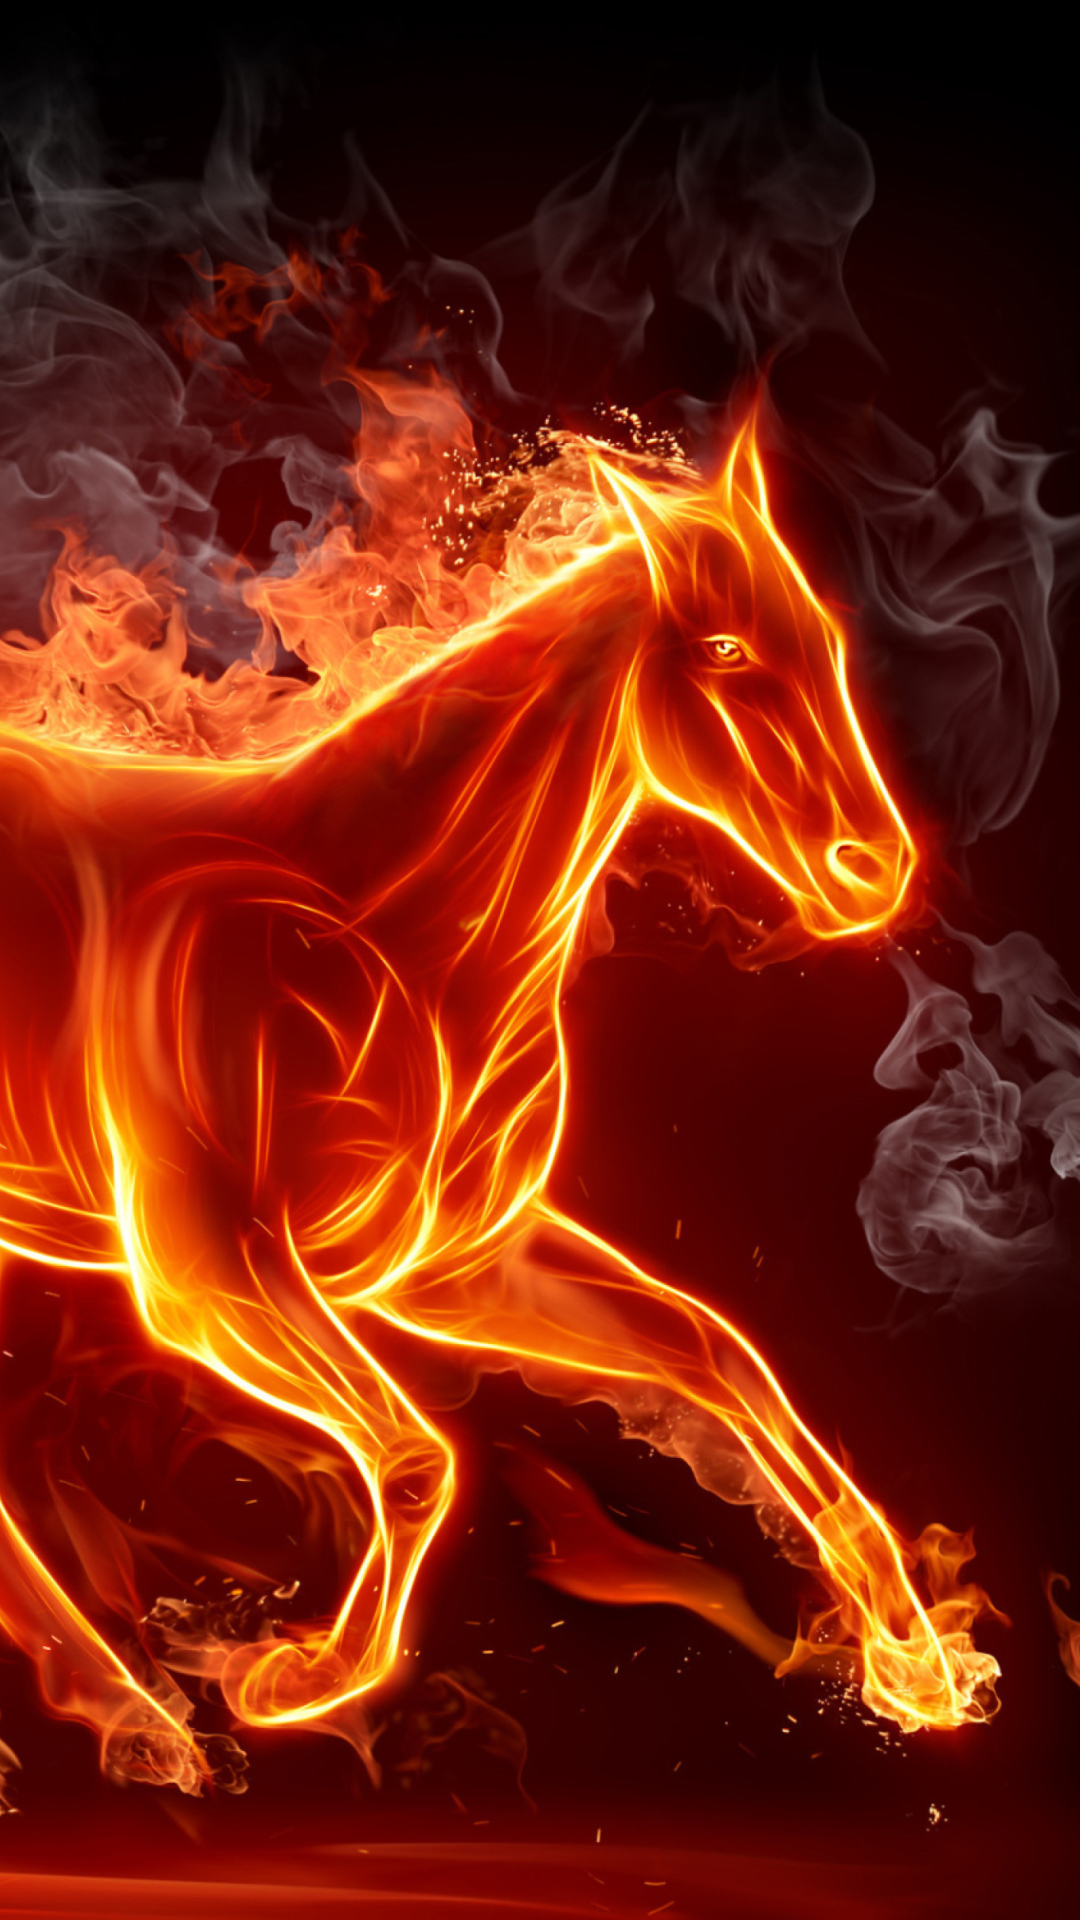 Fire Horse wallpaper 1080x1920